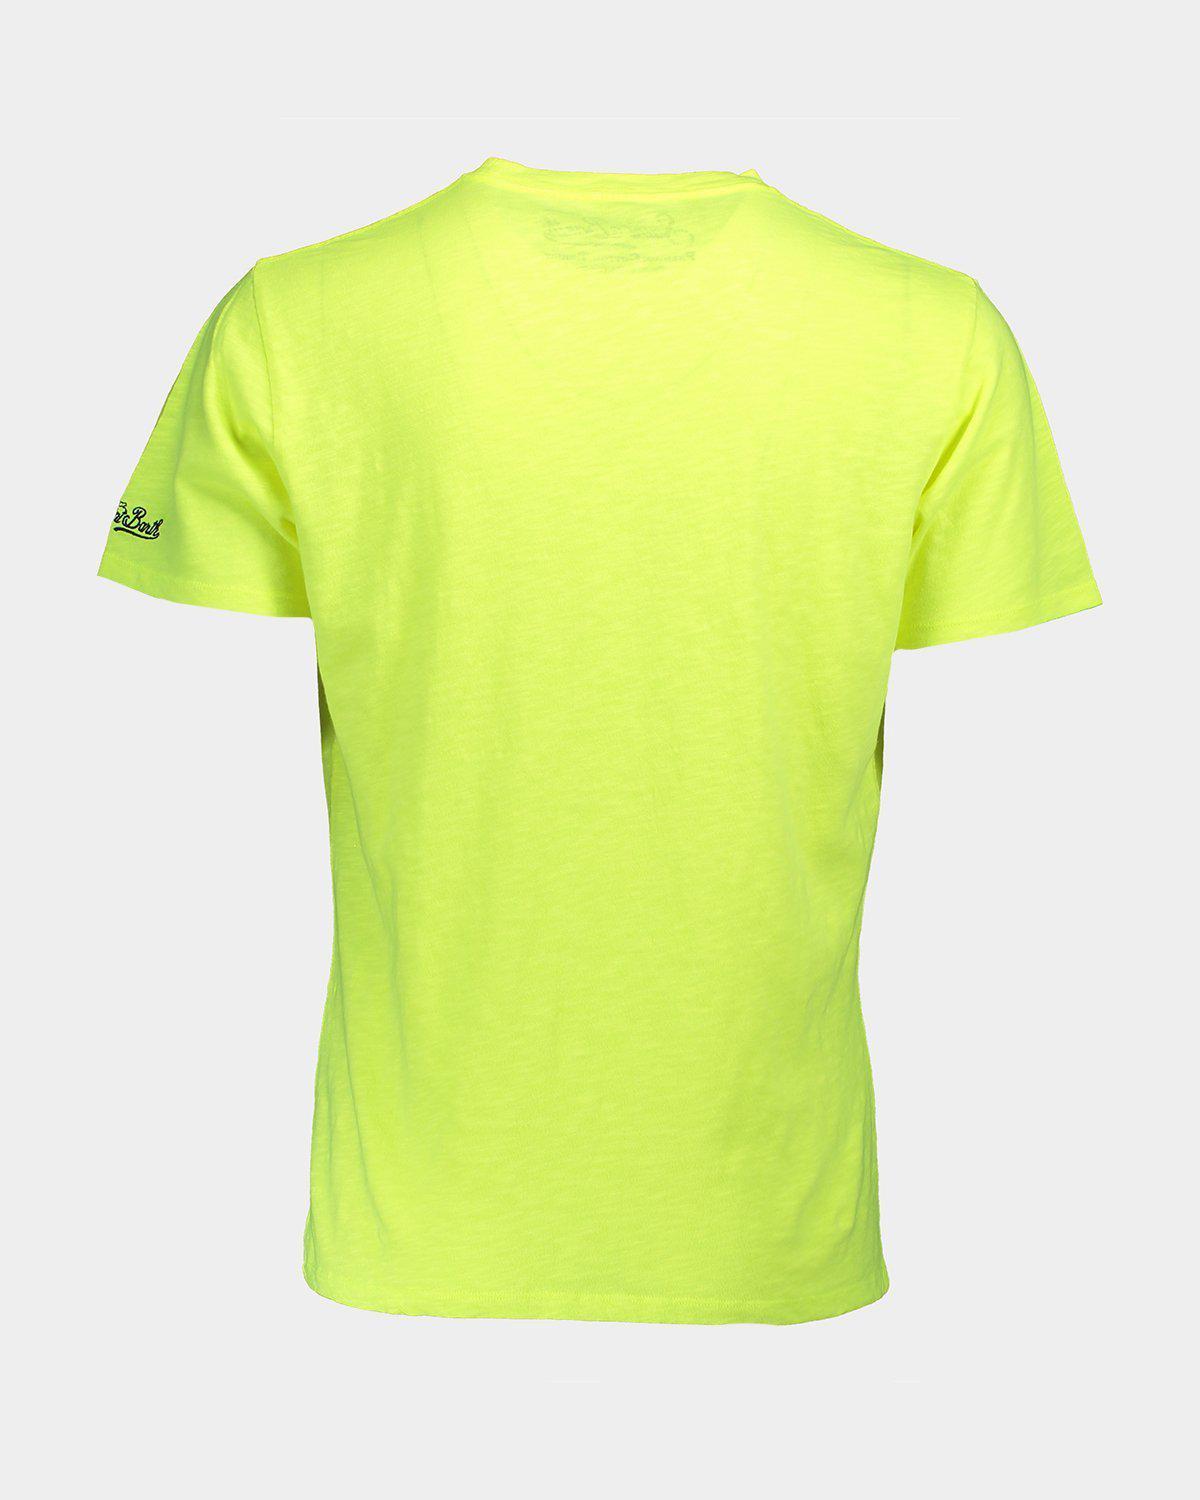 T-shirt Skylar Trooper giallo fluo